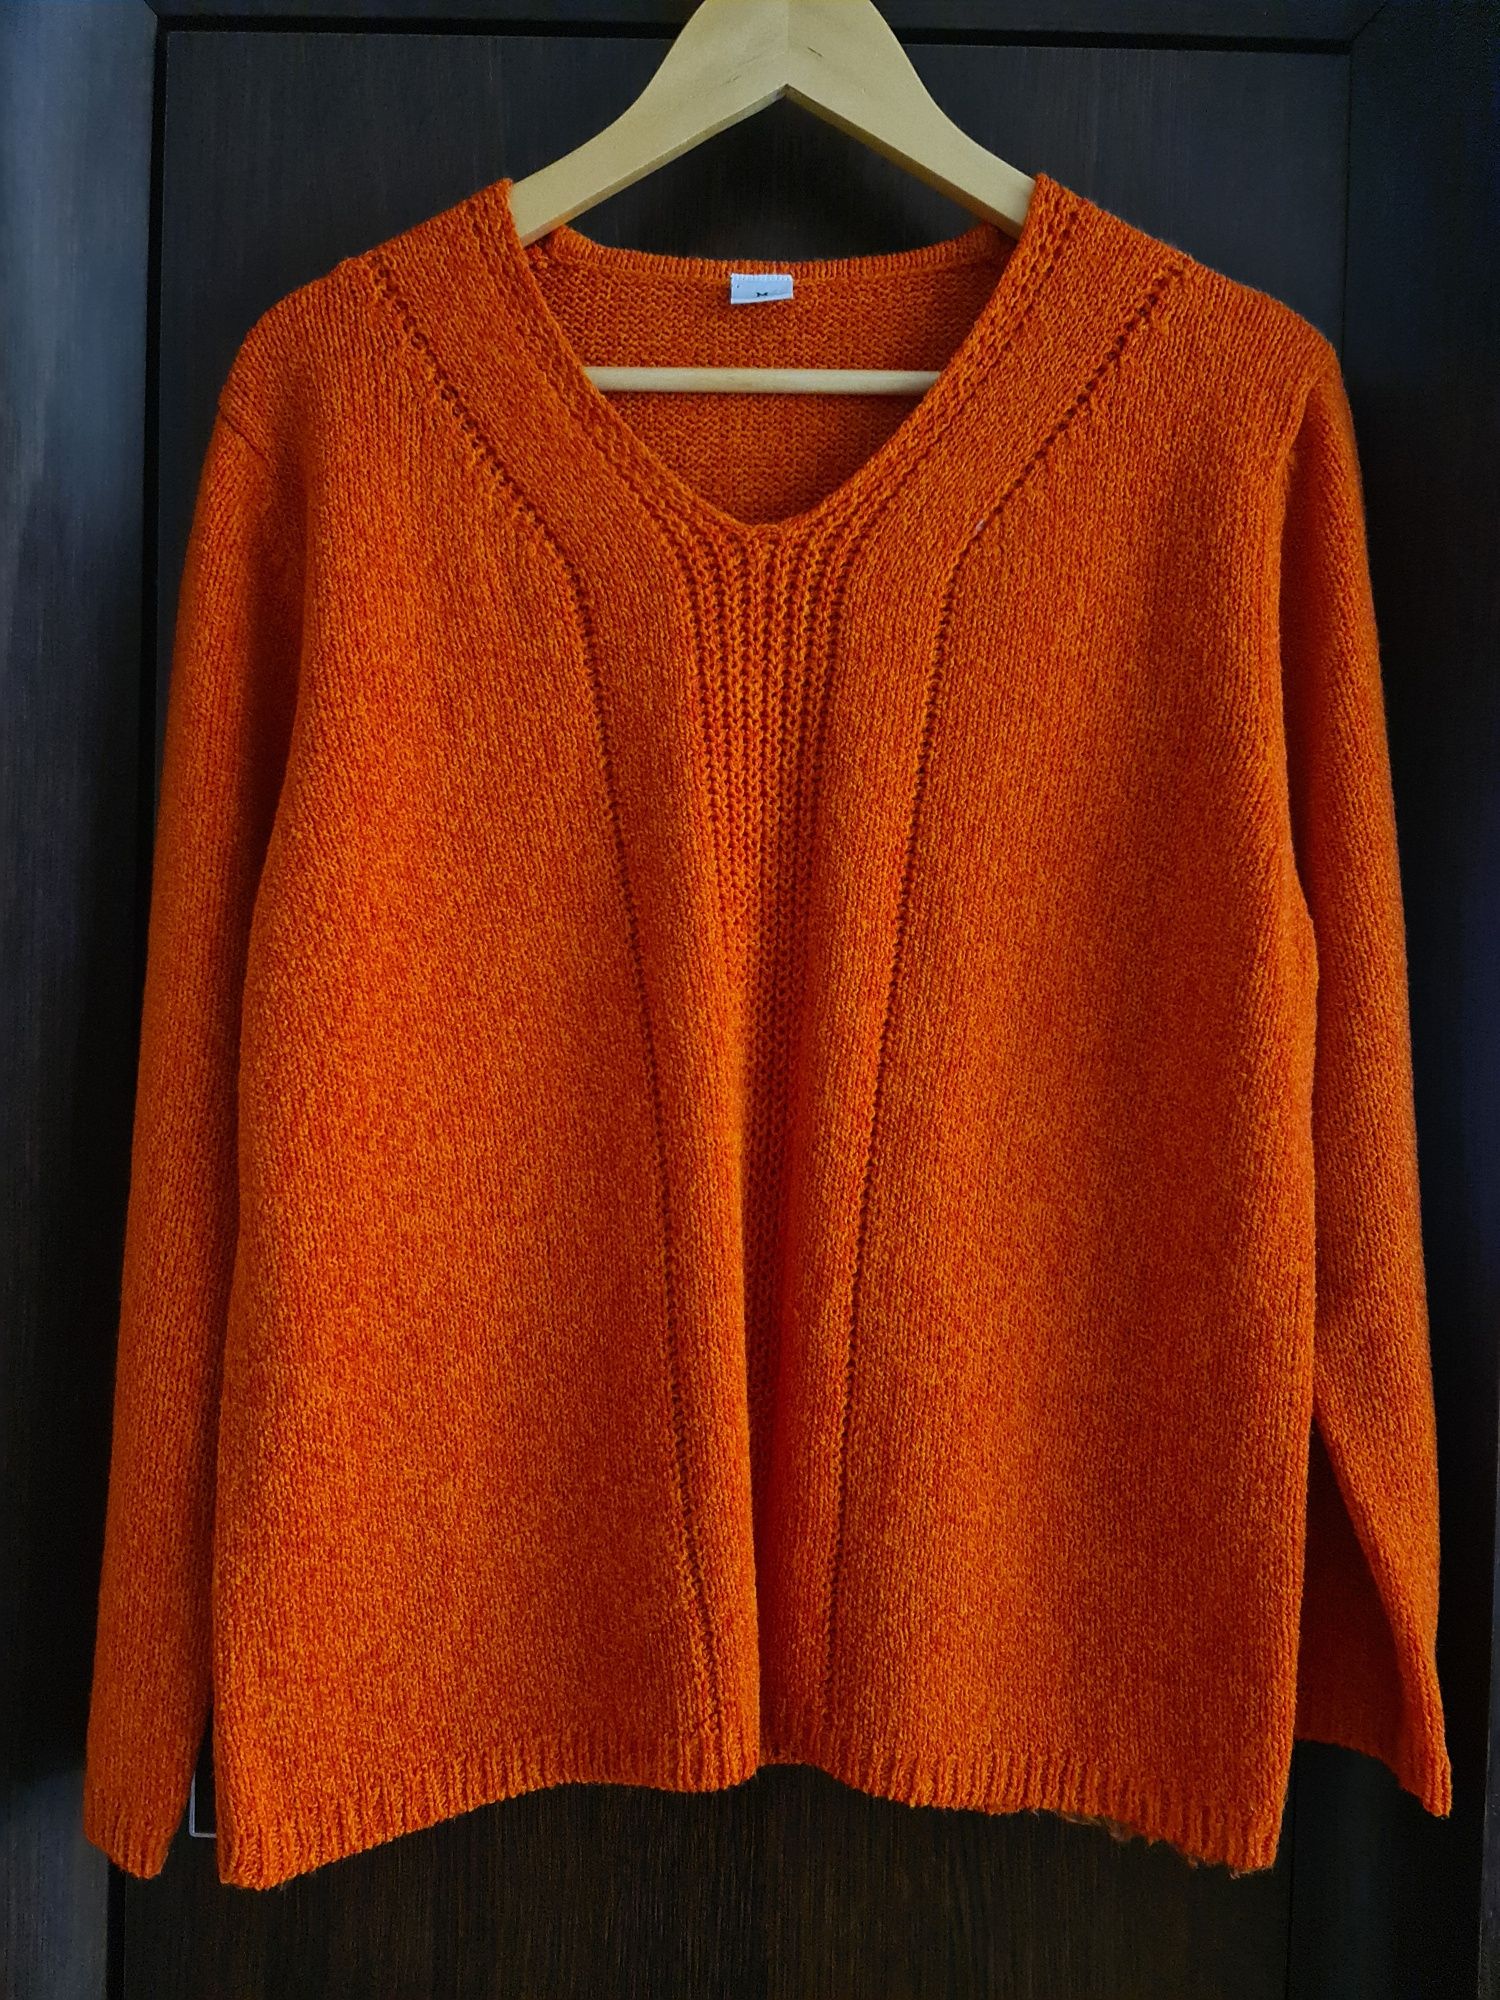 Sweter ceglasy/pomarańczowy